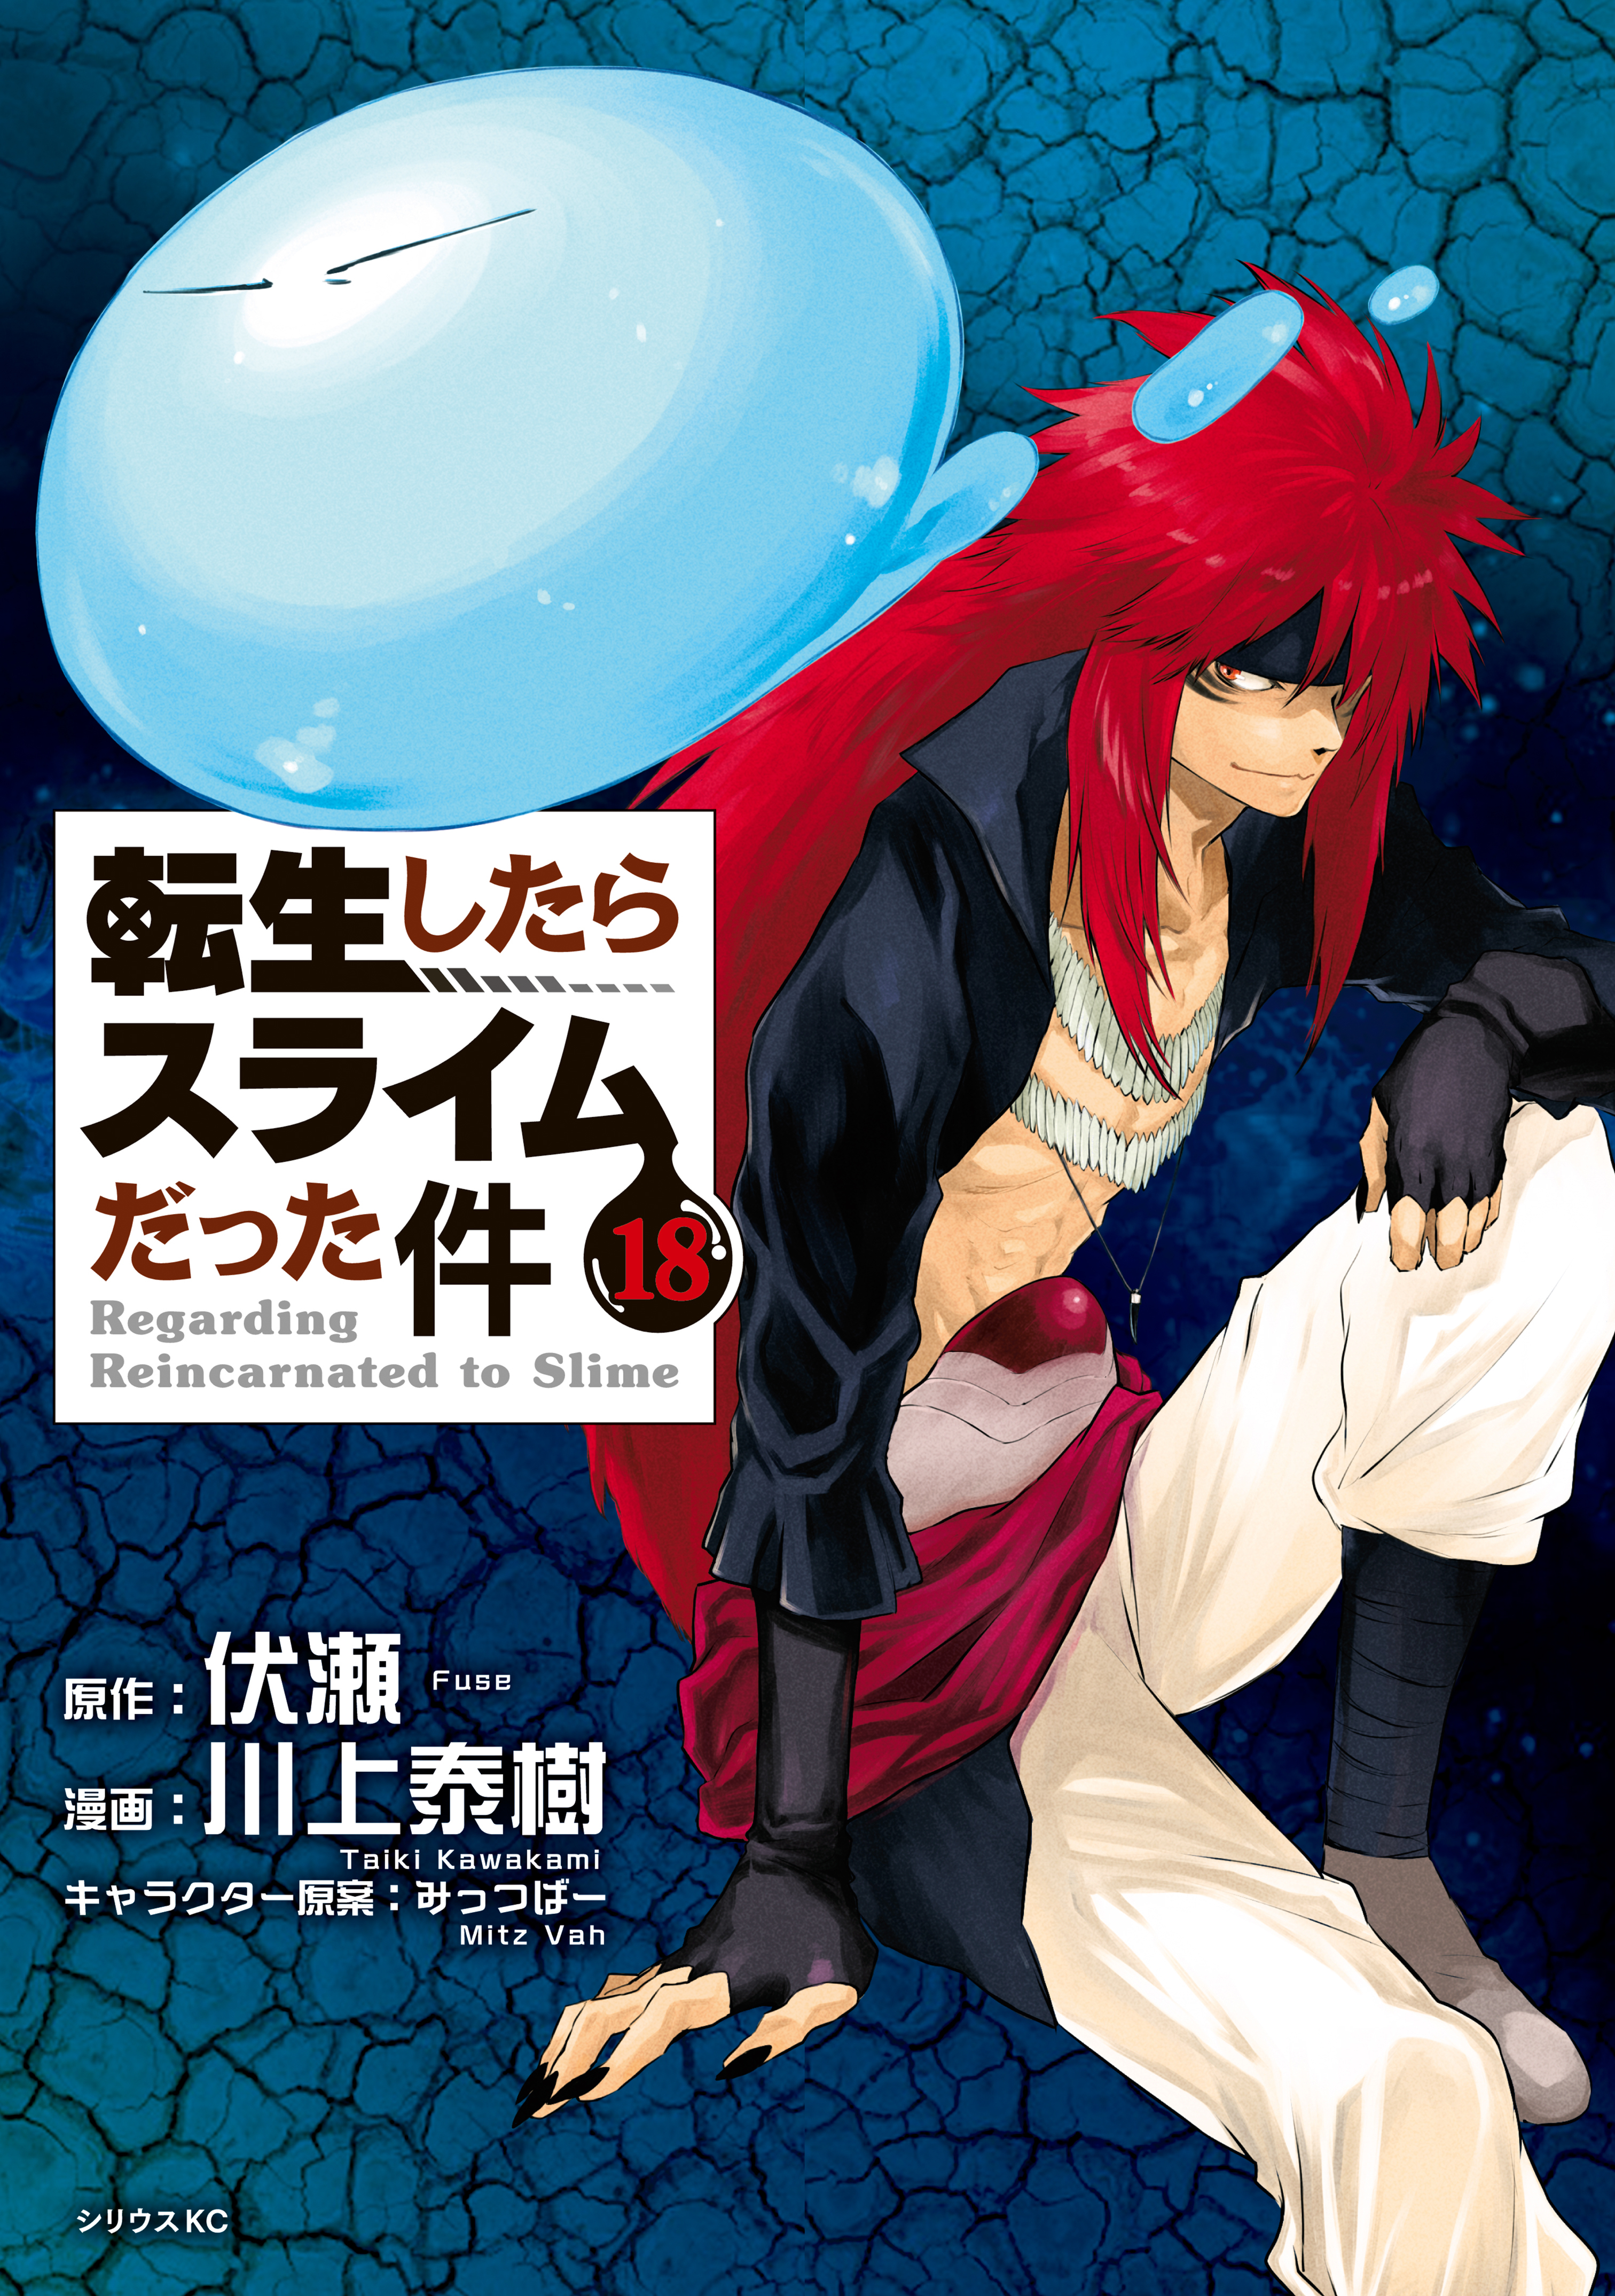 転生したらスライムだった件 1 [Tensei shitara Slime Datta Ken [Light Novel] 1] by Fuse